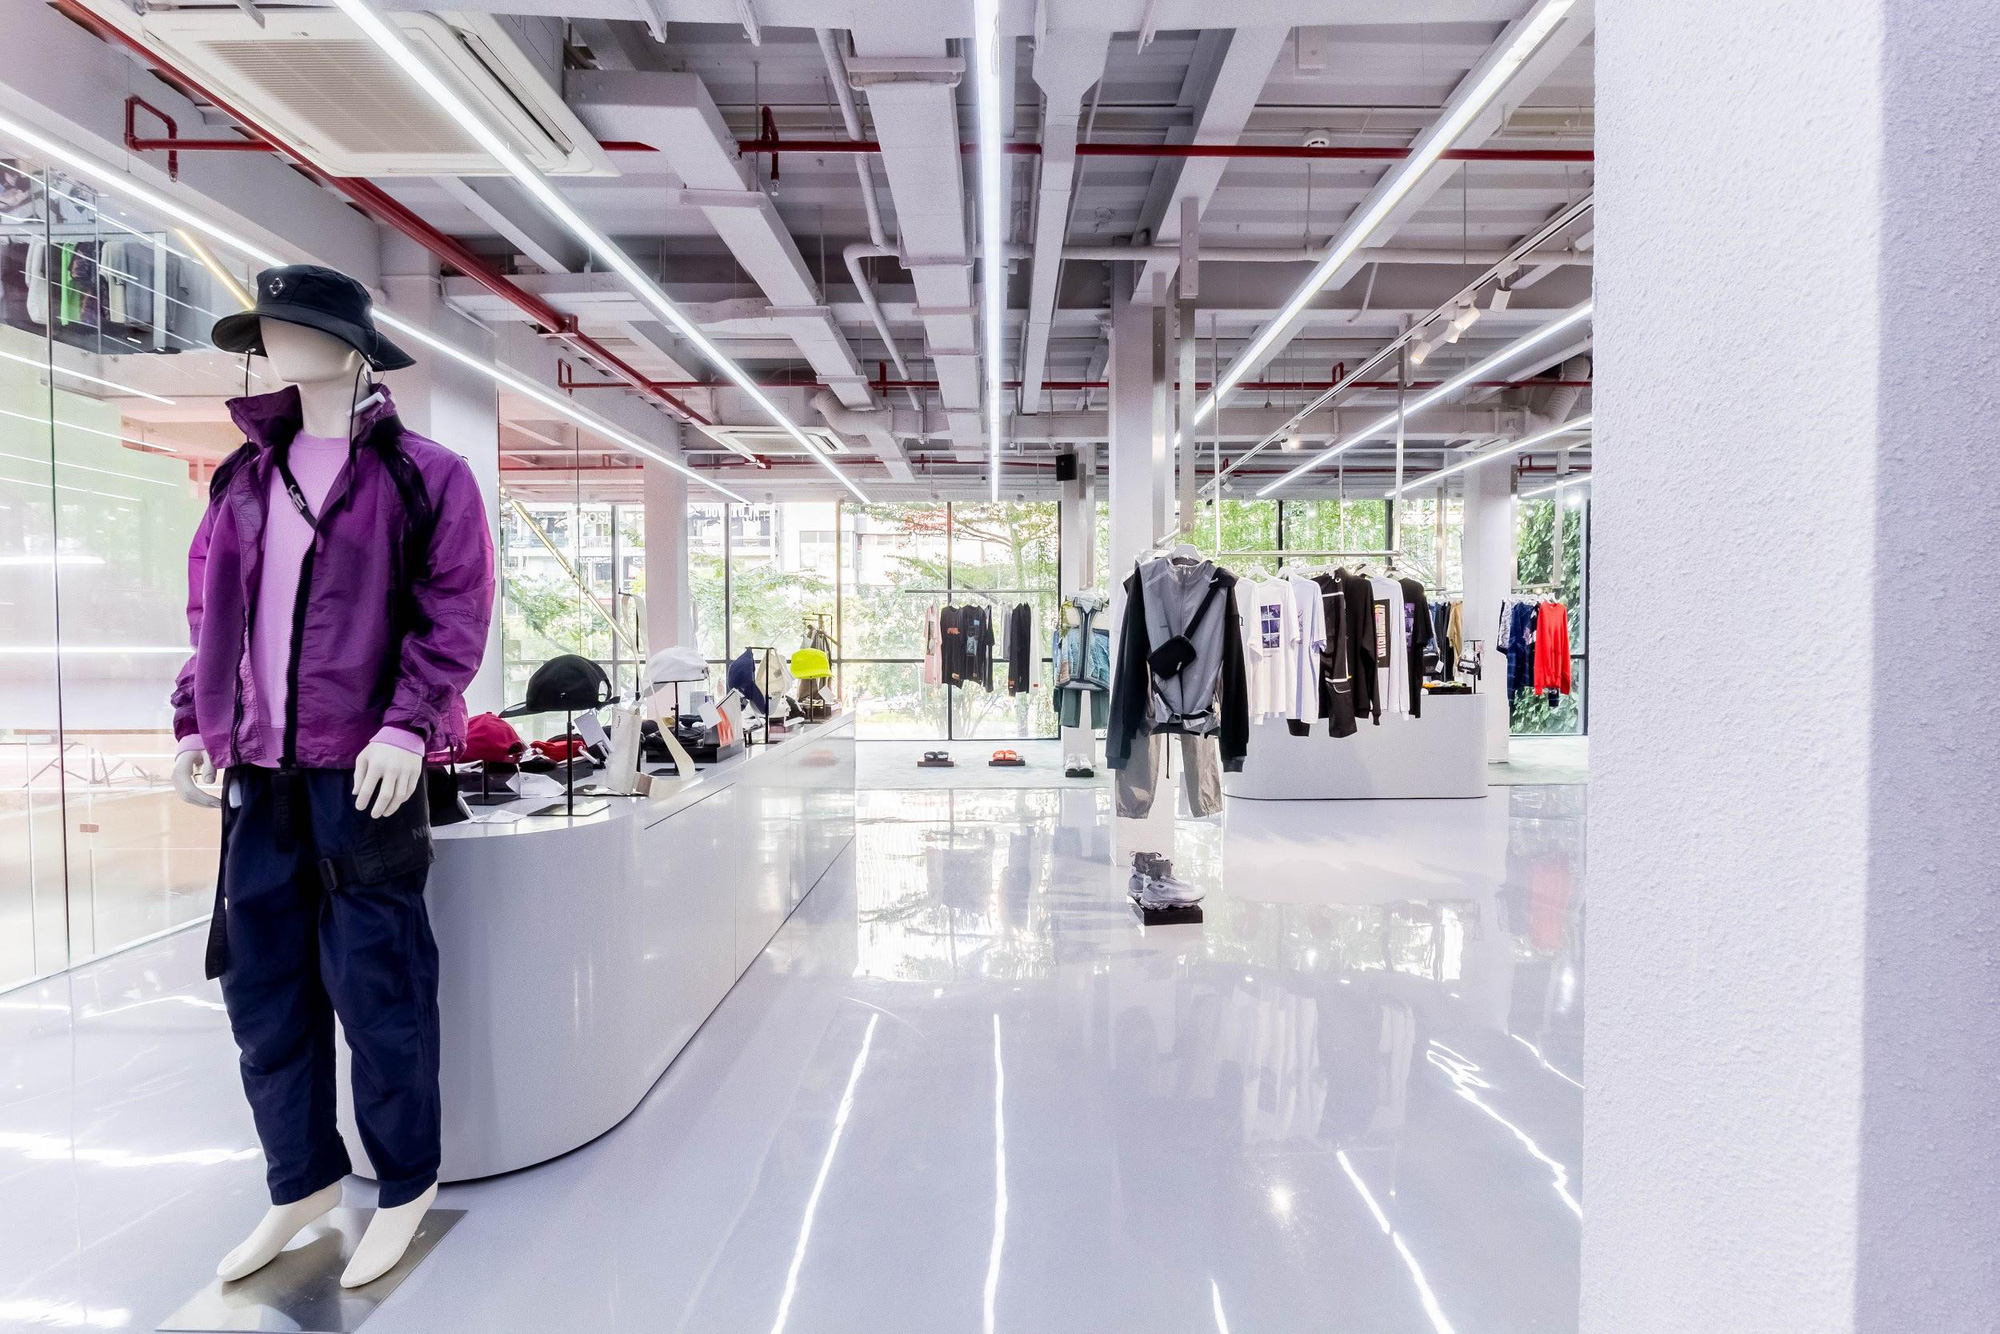 labels: khai trương cửa hàng thời trang cao cấp đa thương hiệu 1.700m2 tại phố đi bộ - Ảnh 2.